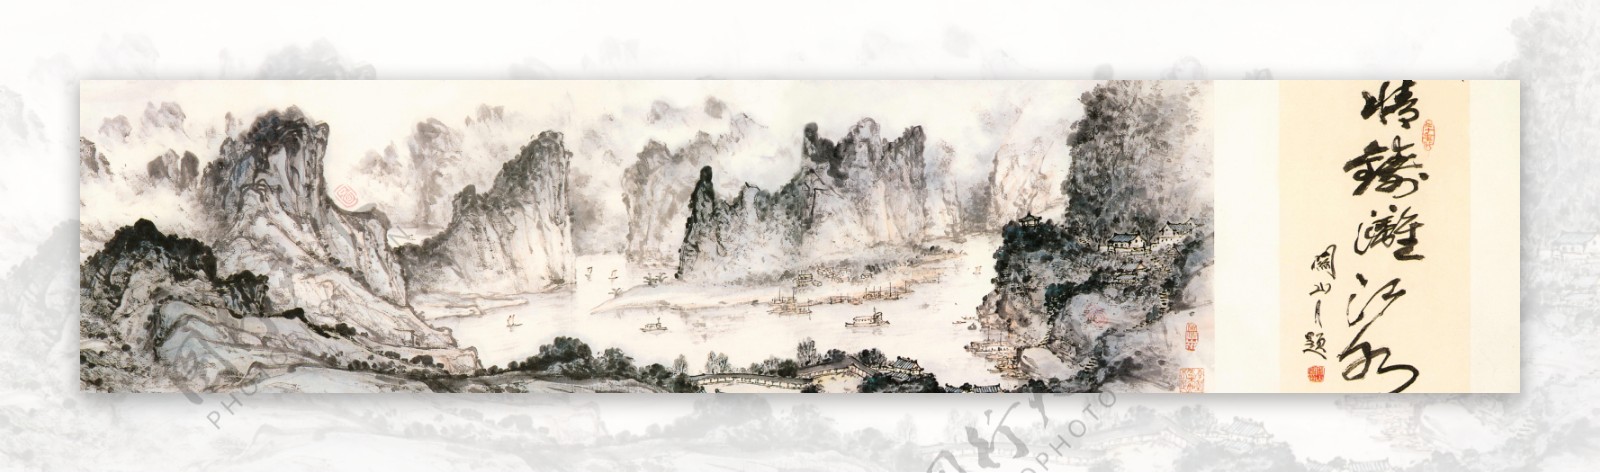 江峡图卷图片